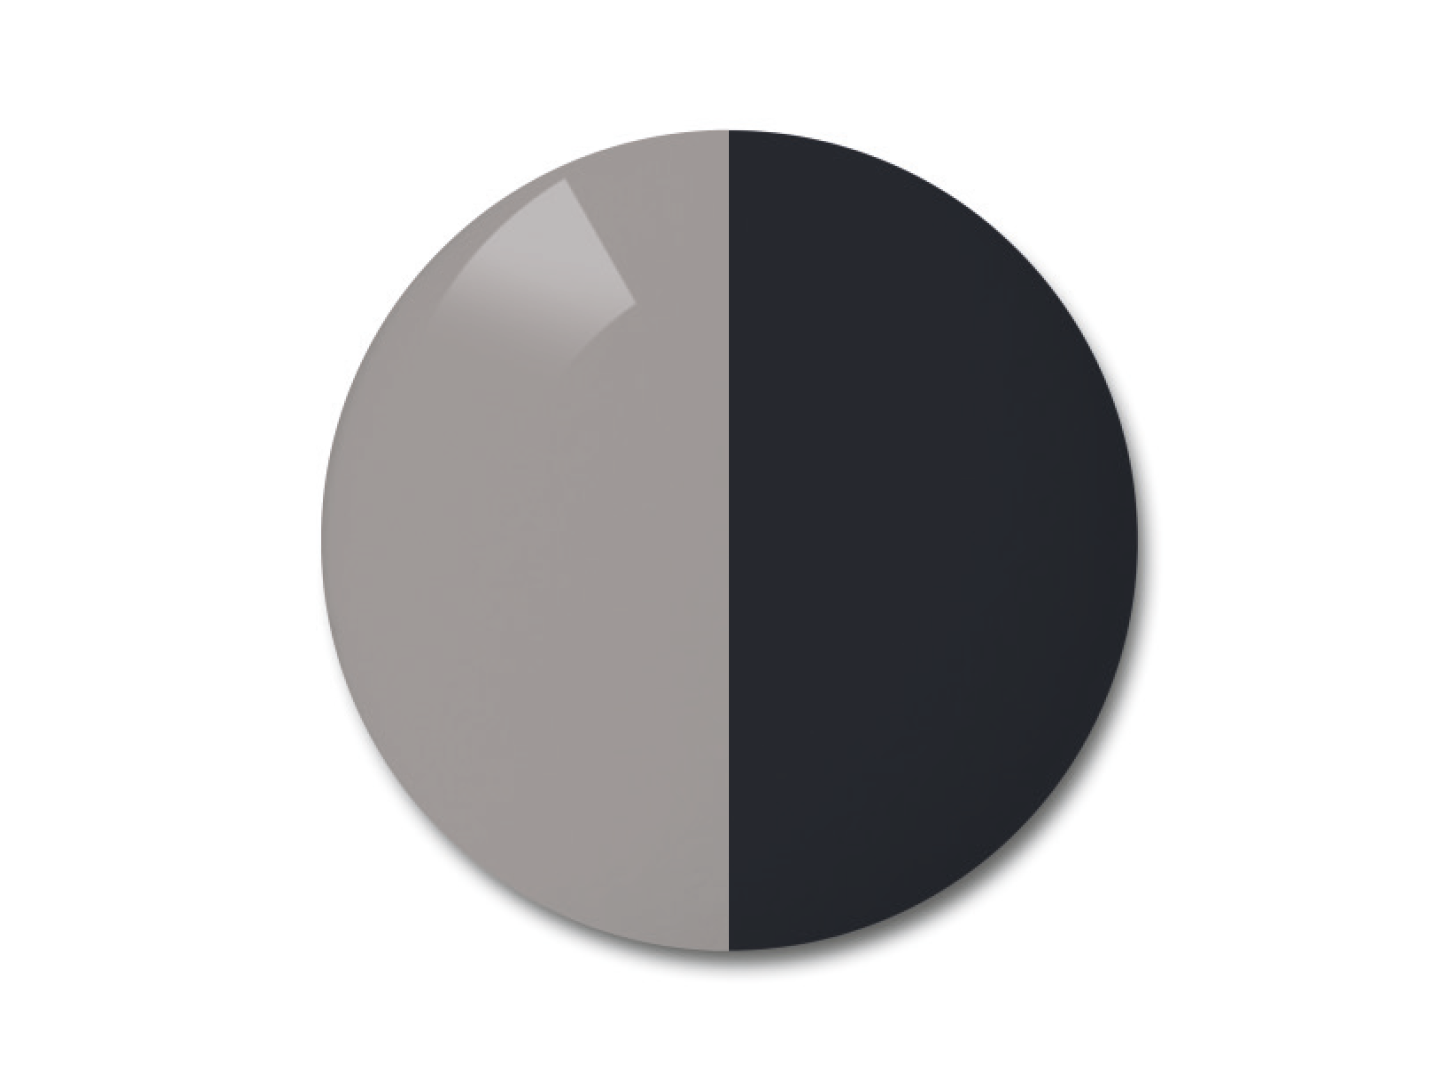 Ilustración de la lente fotocromática ZEISS AdaptiveSun en la opción de color gris uniforme